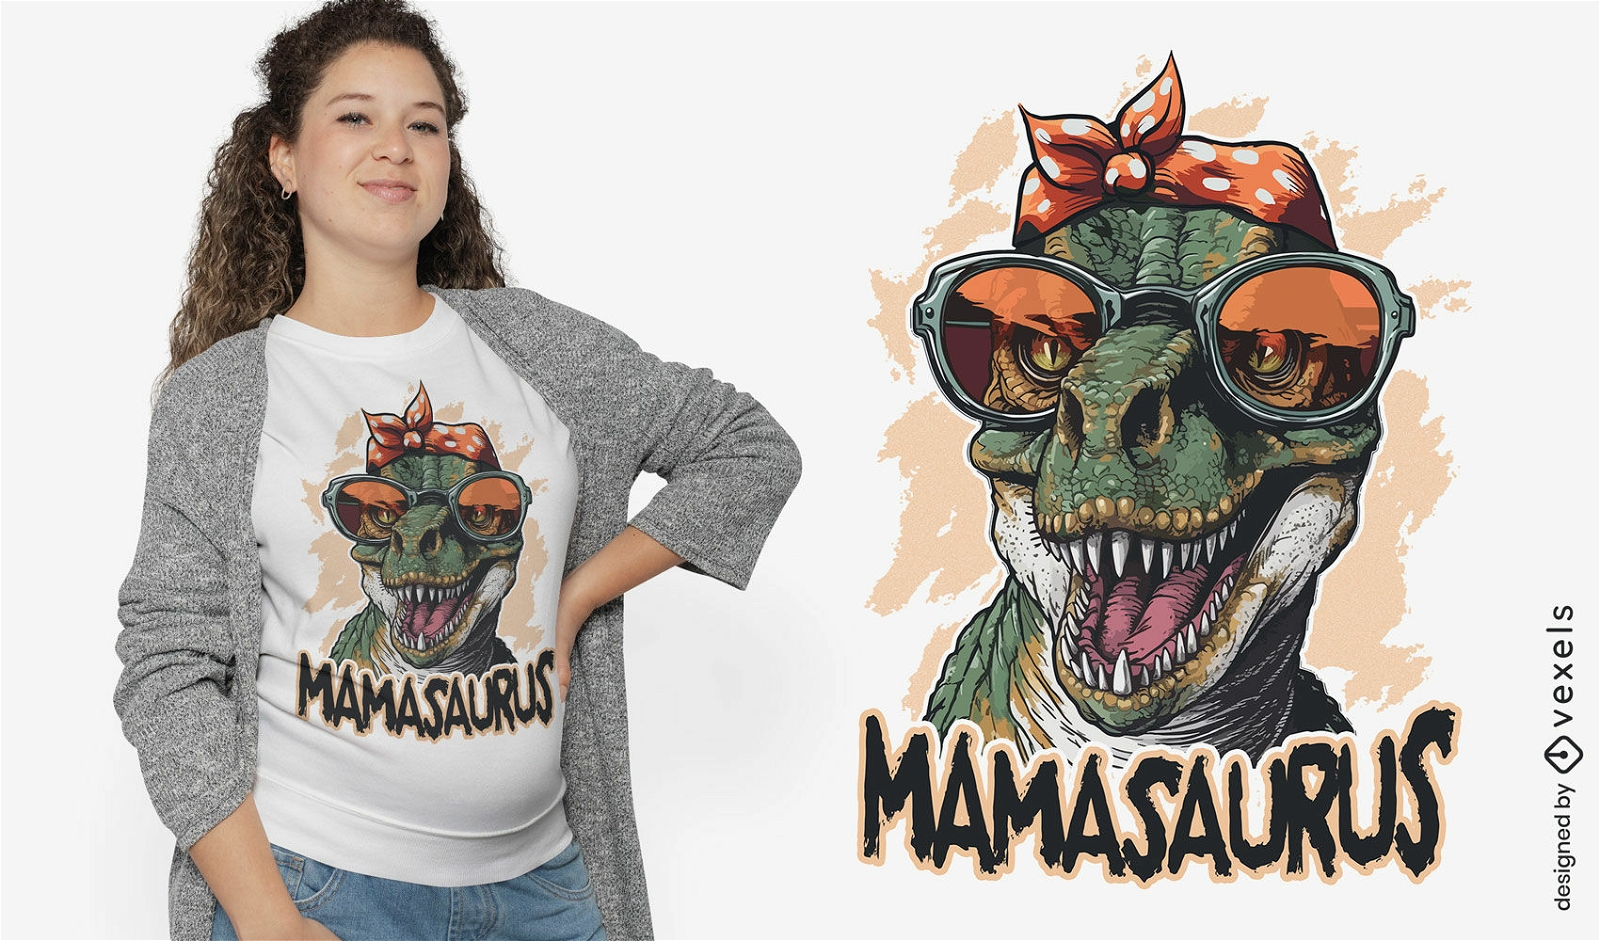 Genial diseño de camiseta de mamasaurus.